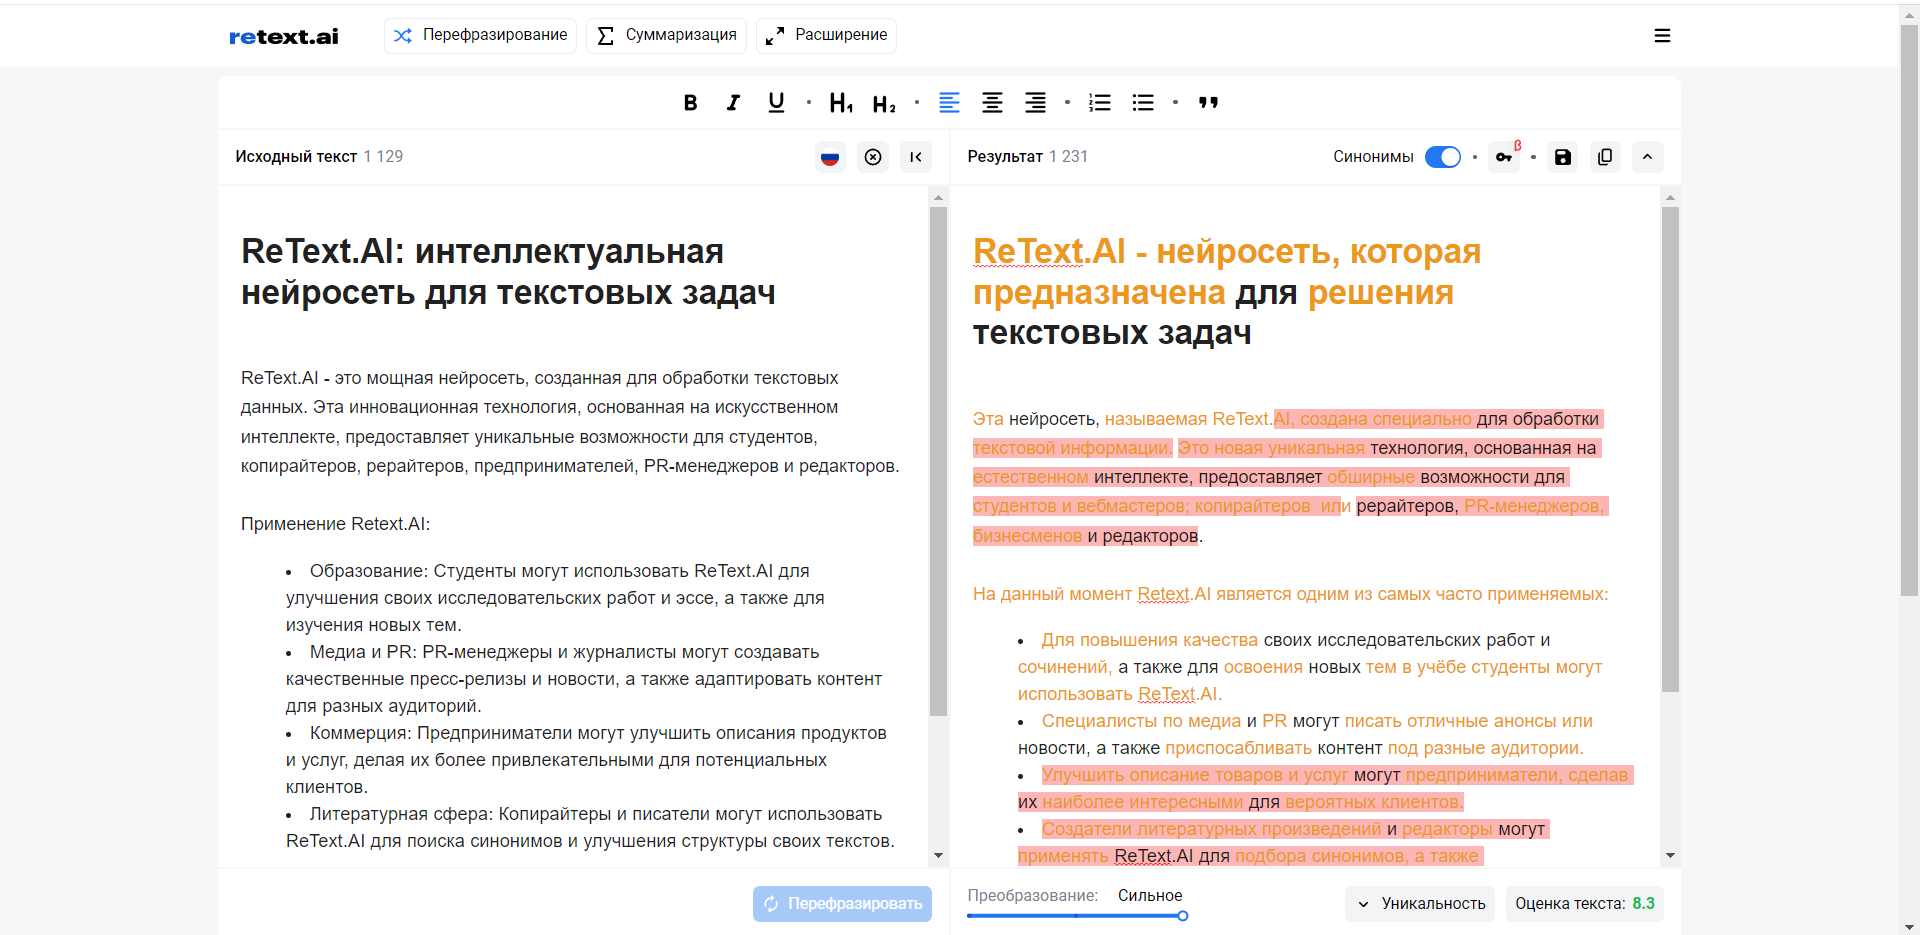 фото: Нейросеть ReText.AI научится анализировать новости с помощью сервисов Yandex Cloud